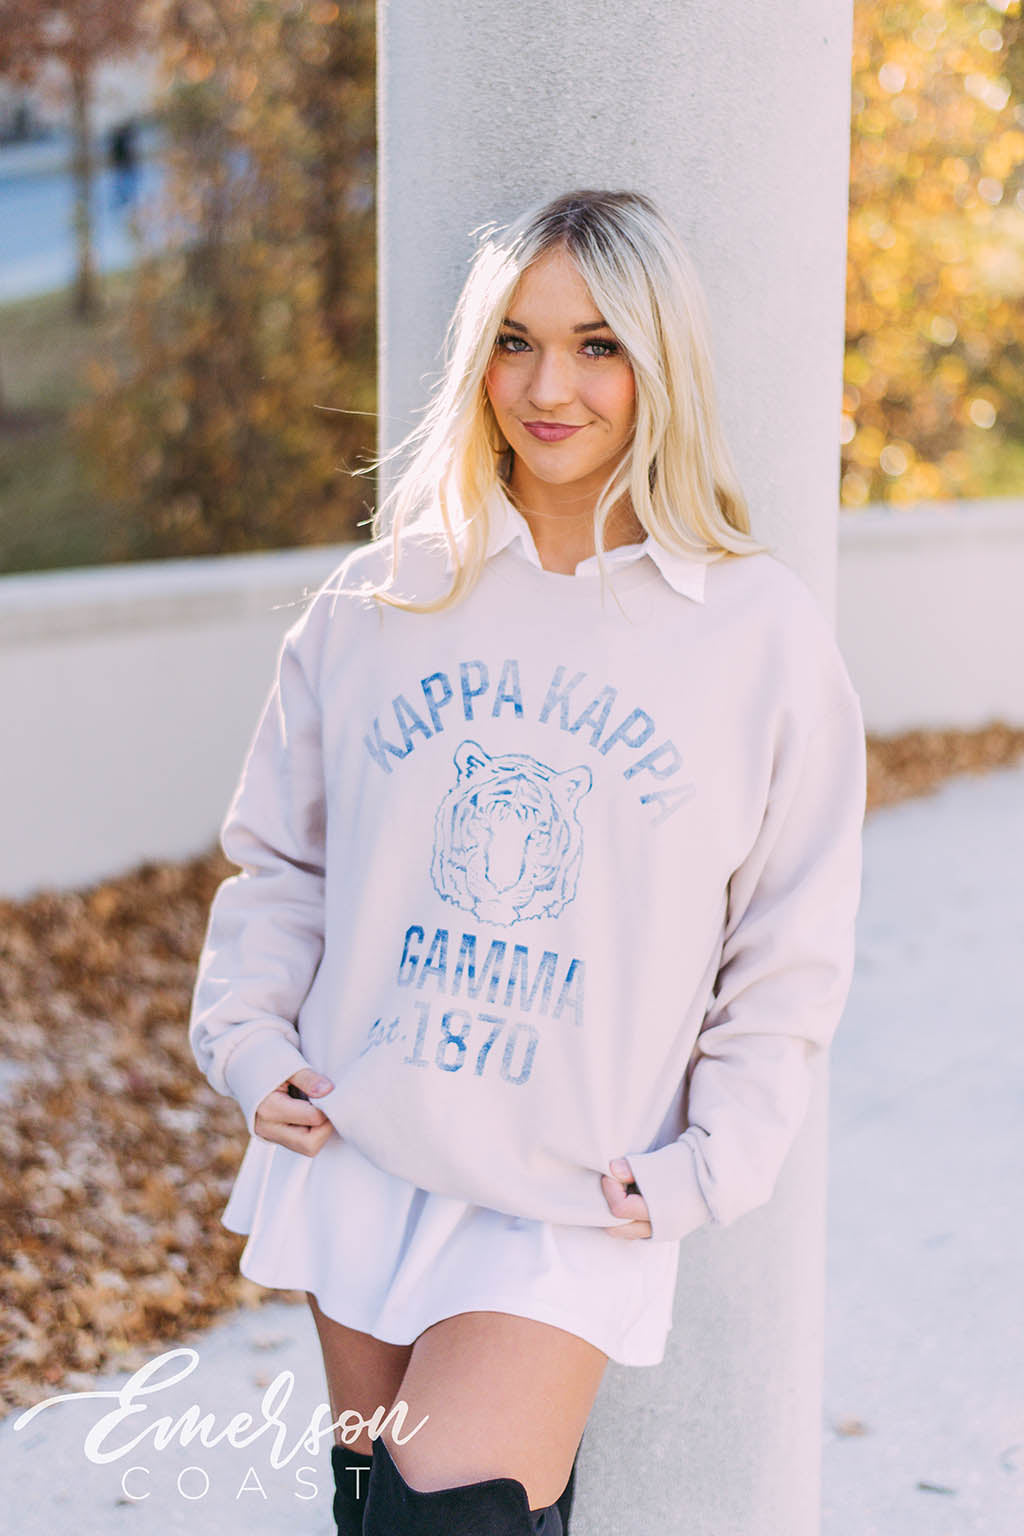 Northern Være lommeregner Kappa Kappa Gamma Vintage Collegiate Sweatshirt - Emerson Coast